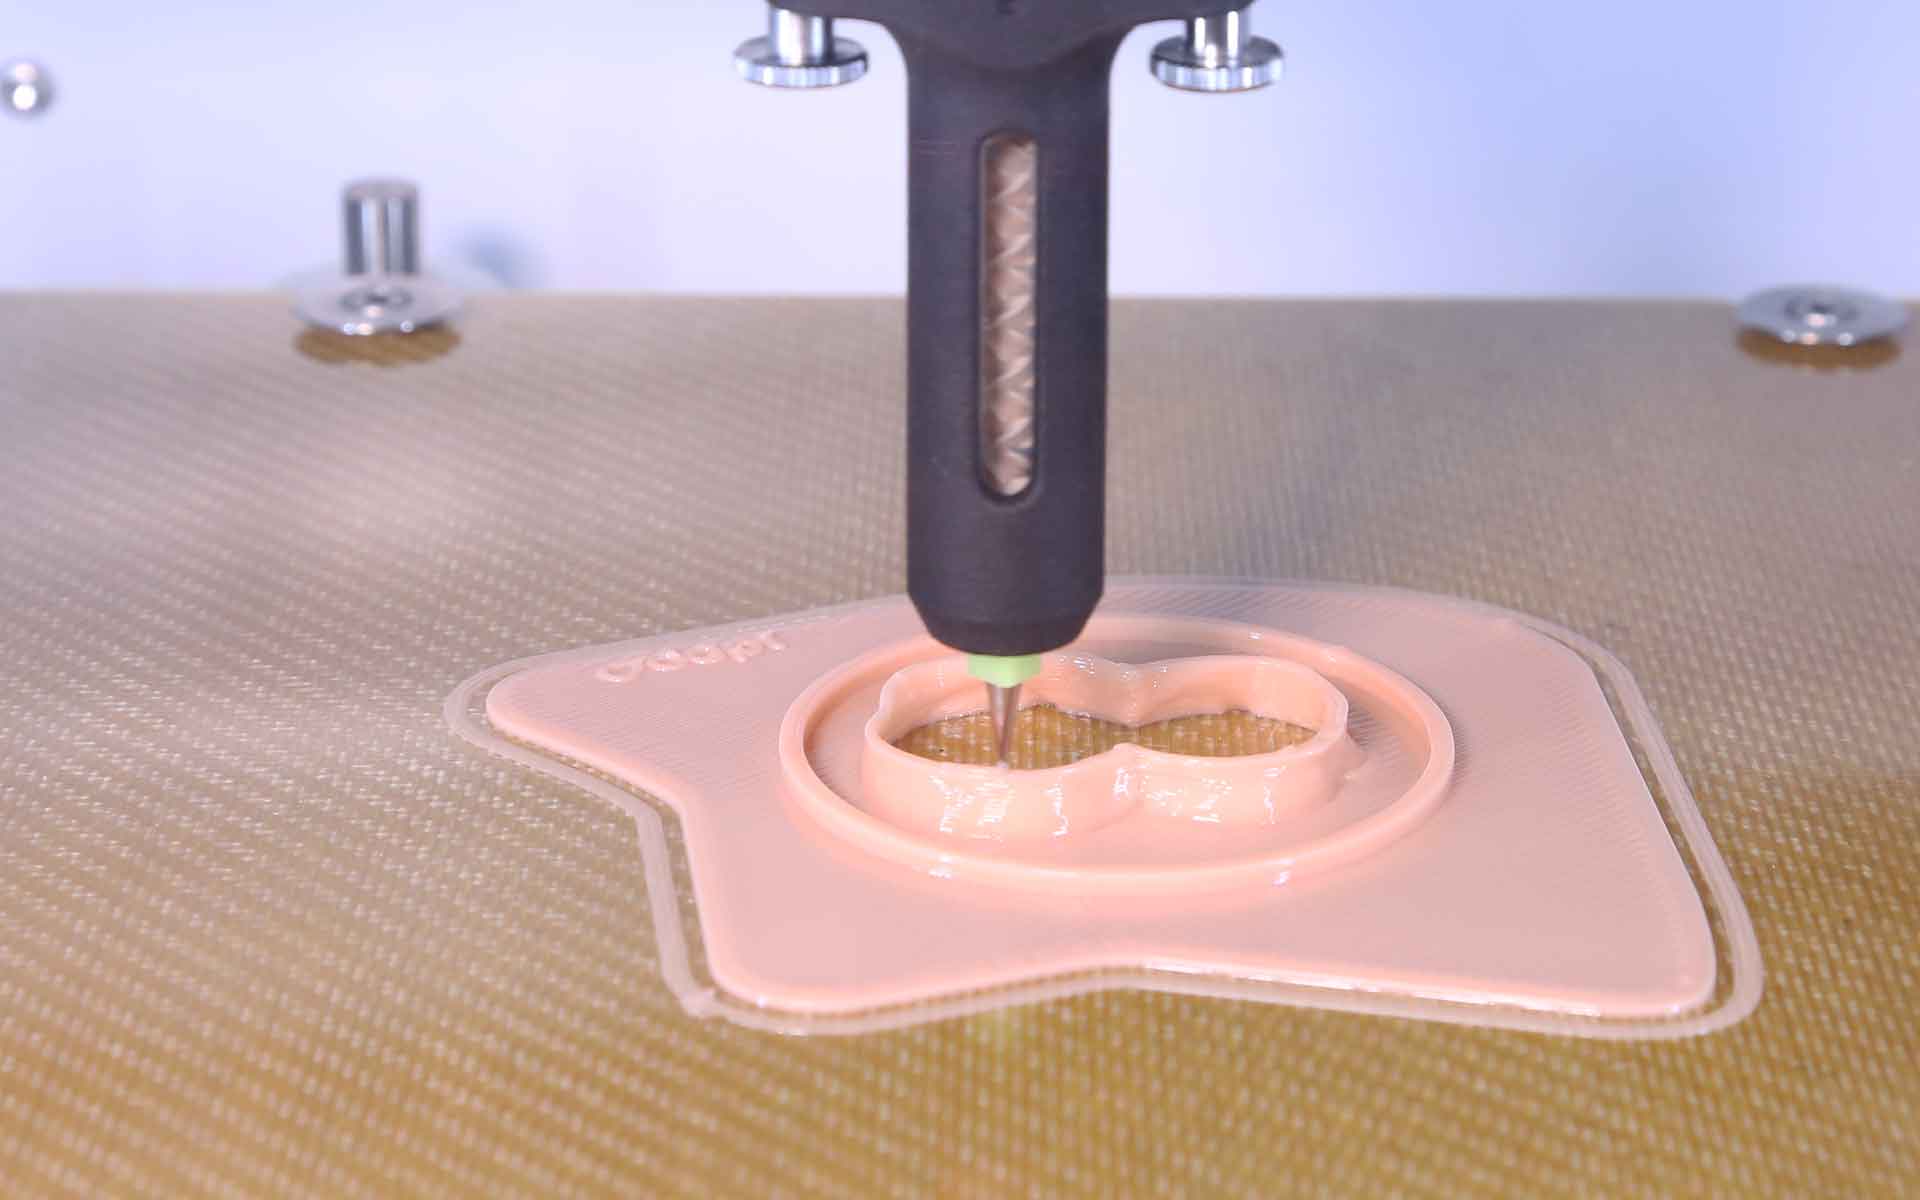 Dispositif medical de plaquettes personnalisées pour poches d'ostomie Odapt imprimées en silicone